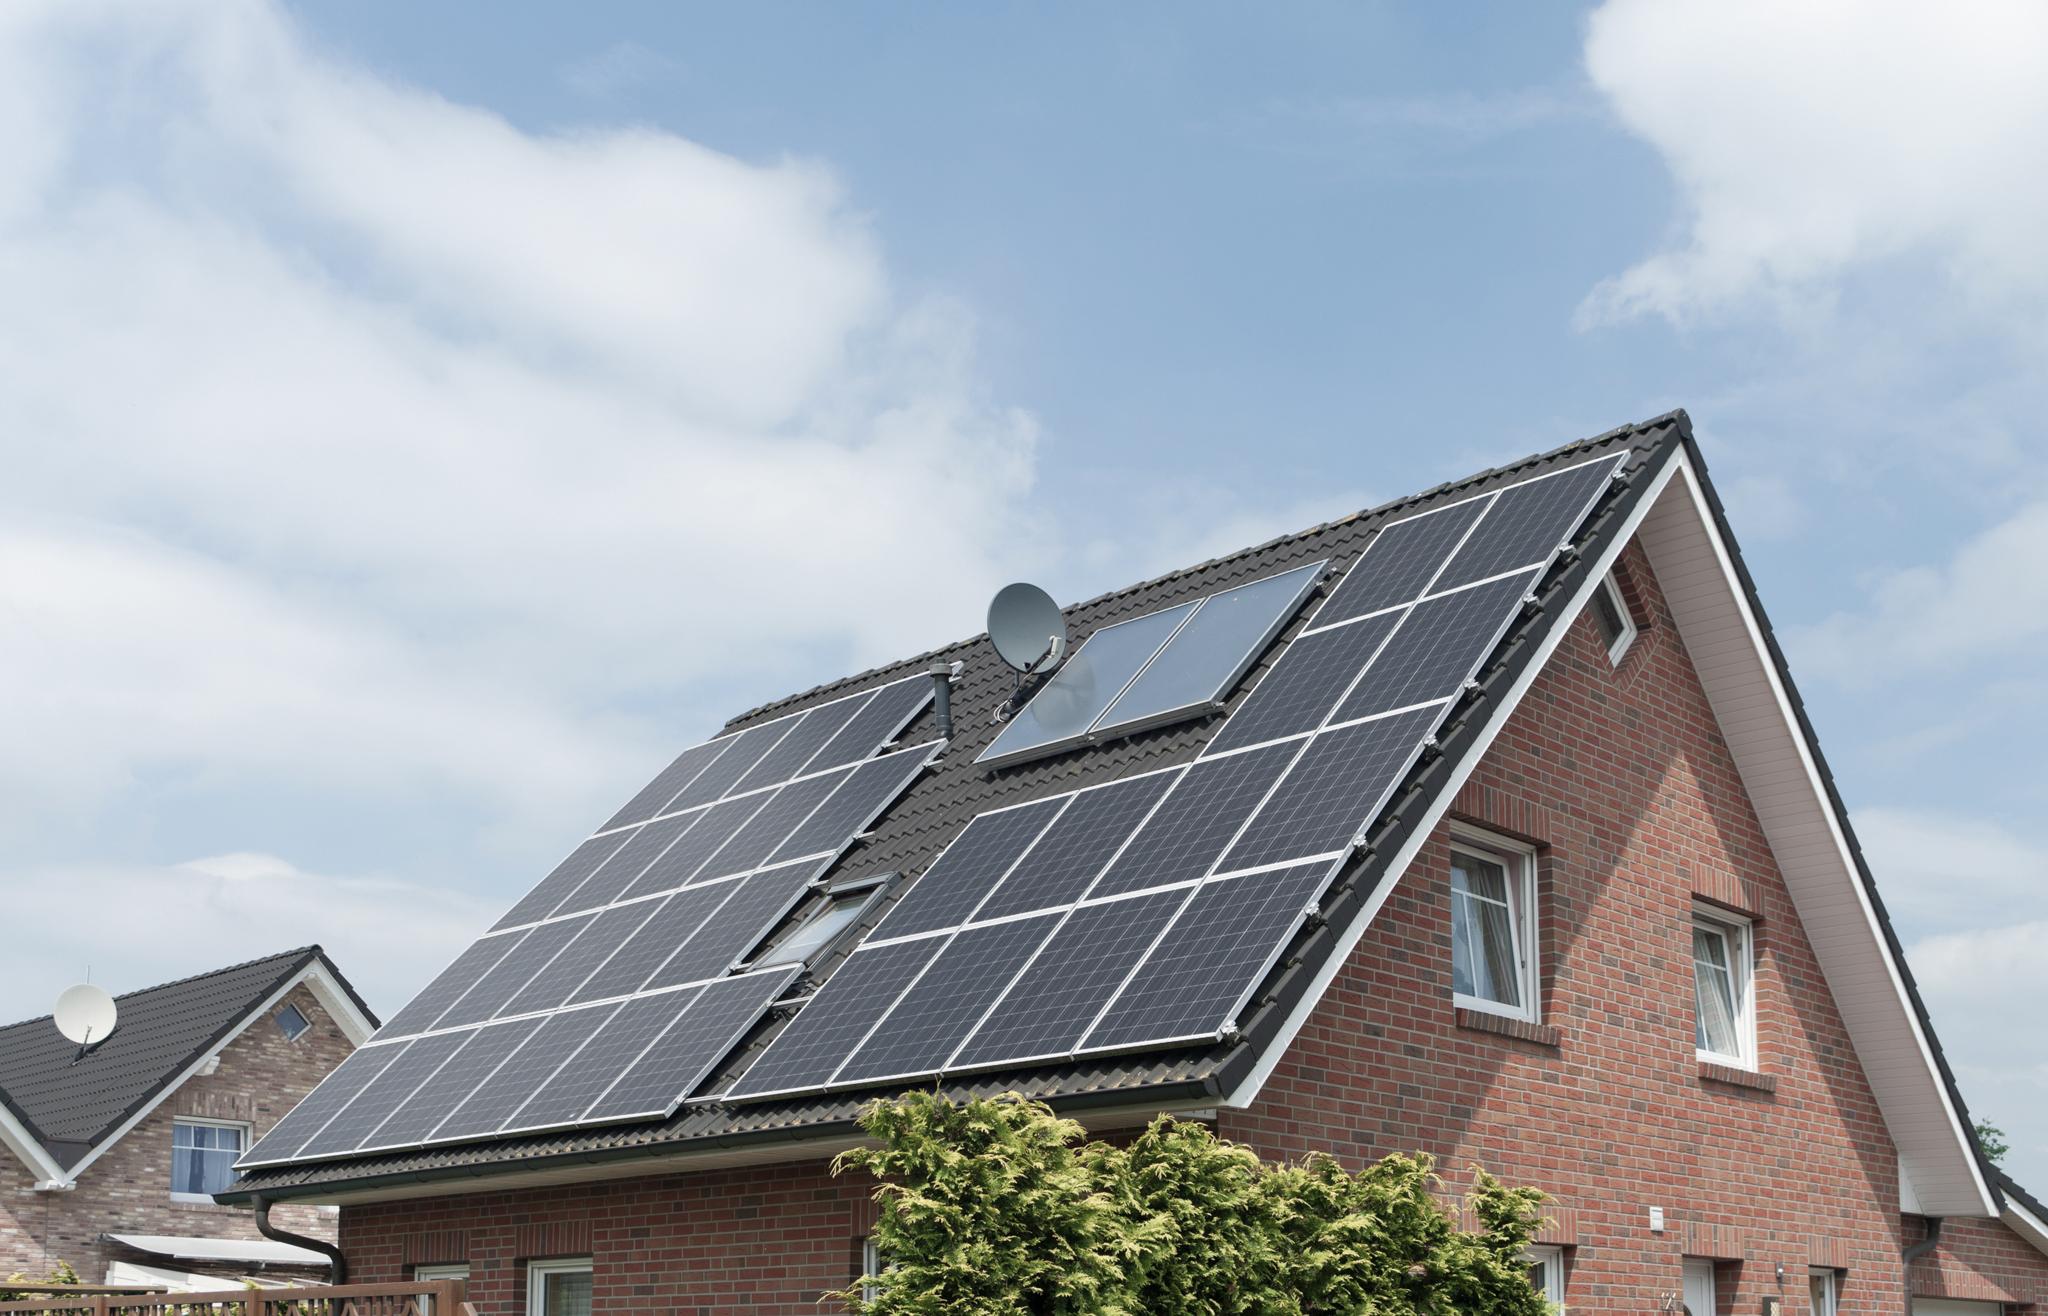 Einfamilienhaus mit Solaranlage auf dem Dach - Photovoltaik Leistungsverlust Hitze